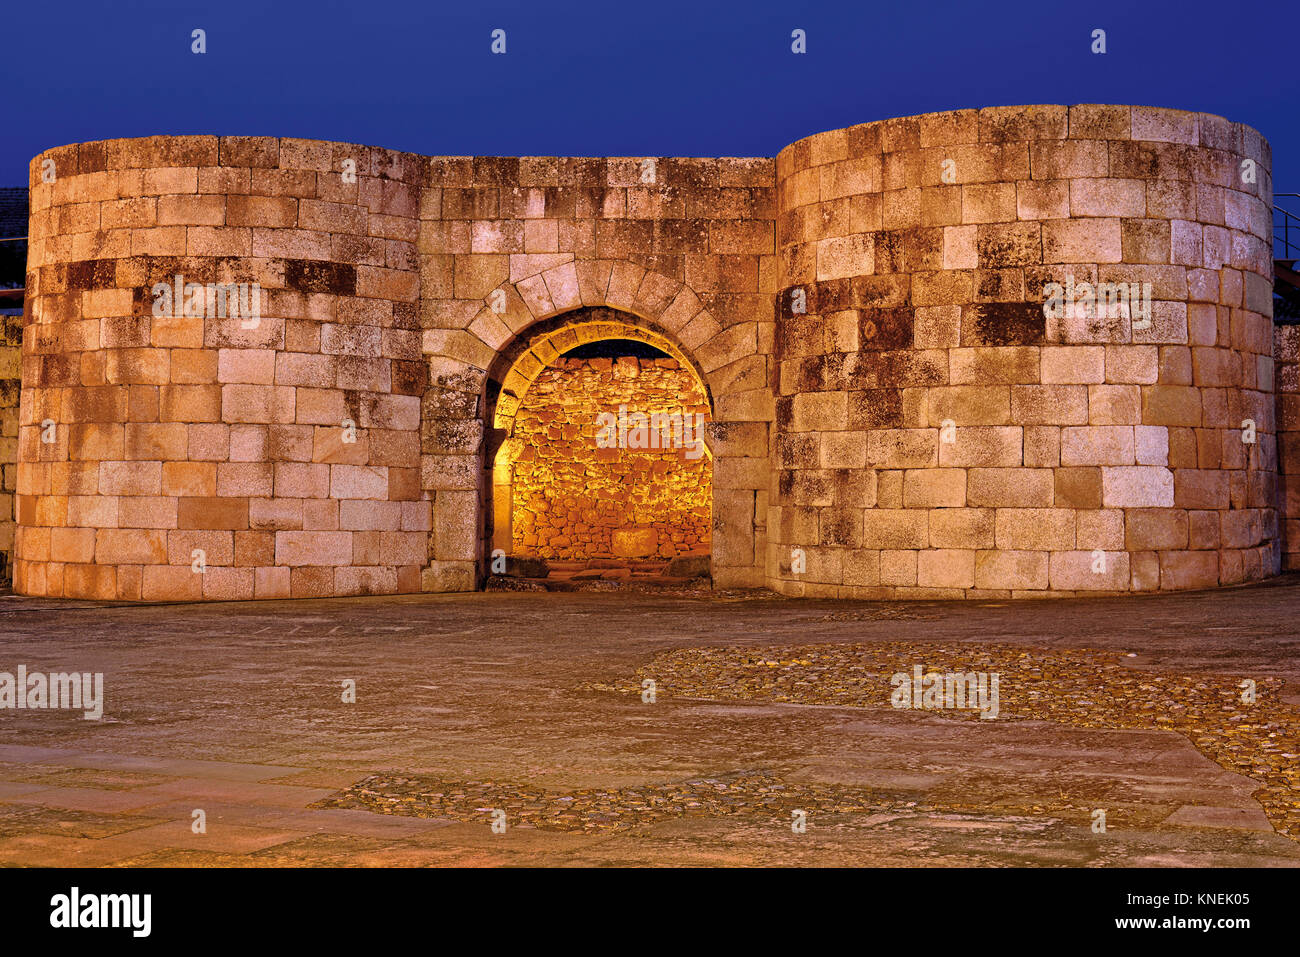 Orologio notturno illumina le mura romane e il gateway Porta Nova nel villaggio storico di Idanha-a-Velha Foto Stock